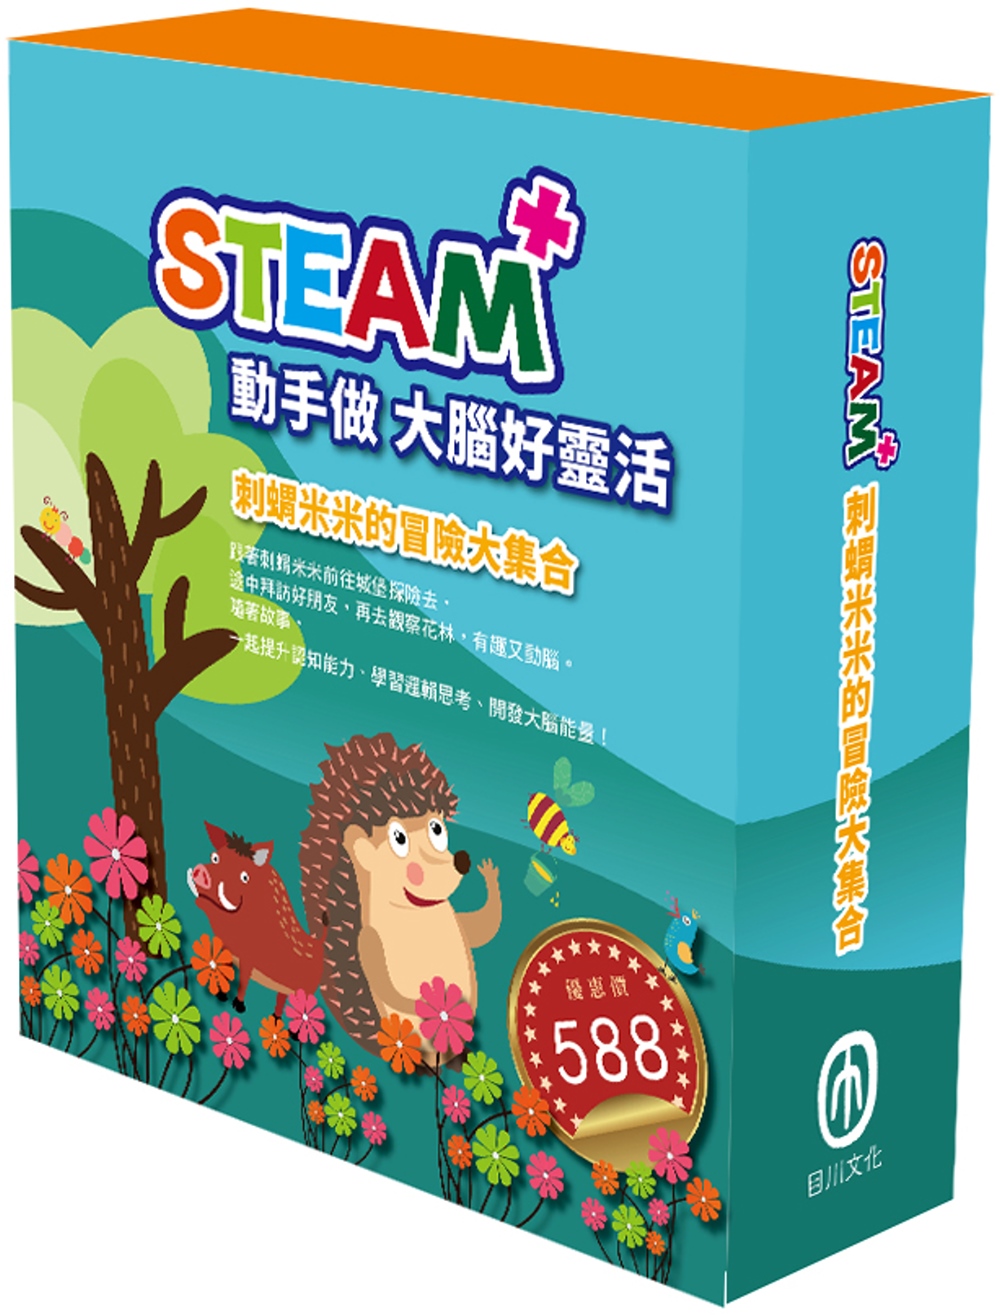 STEAM 刺蝟米米的冒險大集合（STEAM 系列：數字馬賽克(1) 故事遊戲書＋邏輯穿線趣(1) 故事遊戲書＋變形蜂巢紙(1) 故事遊戲書，搭配不同材料包各１包。）